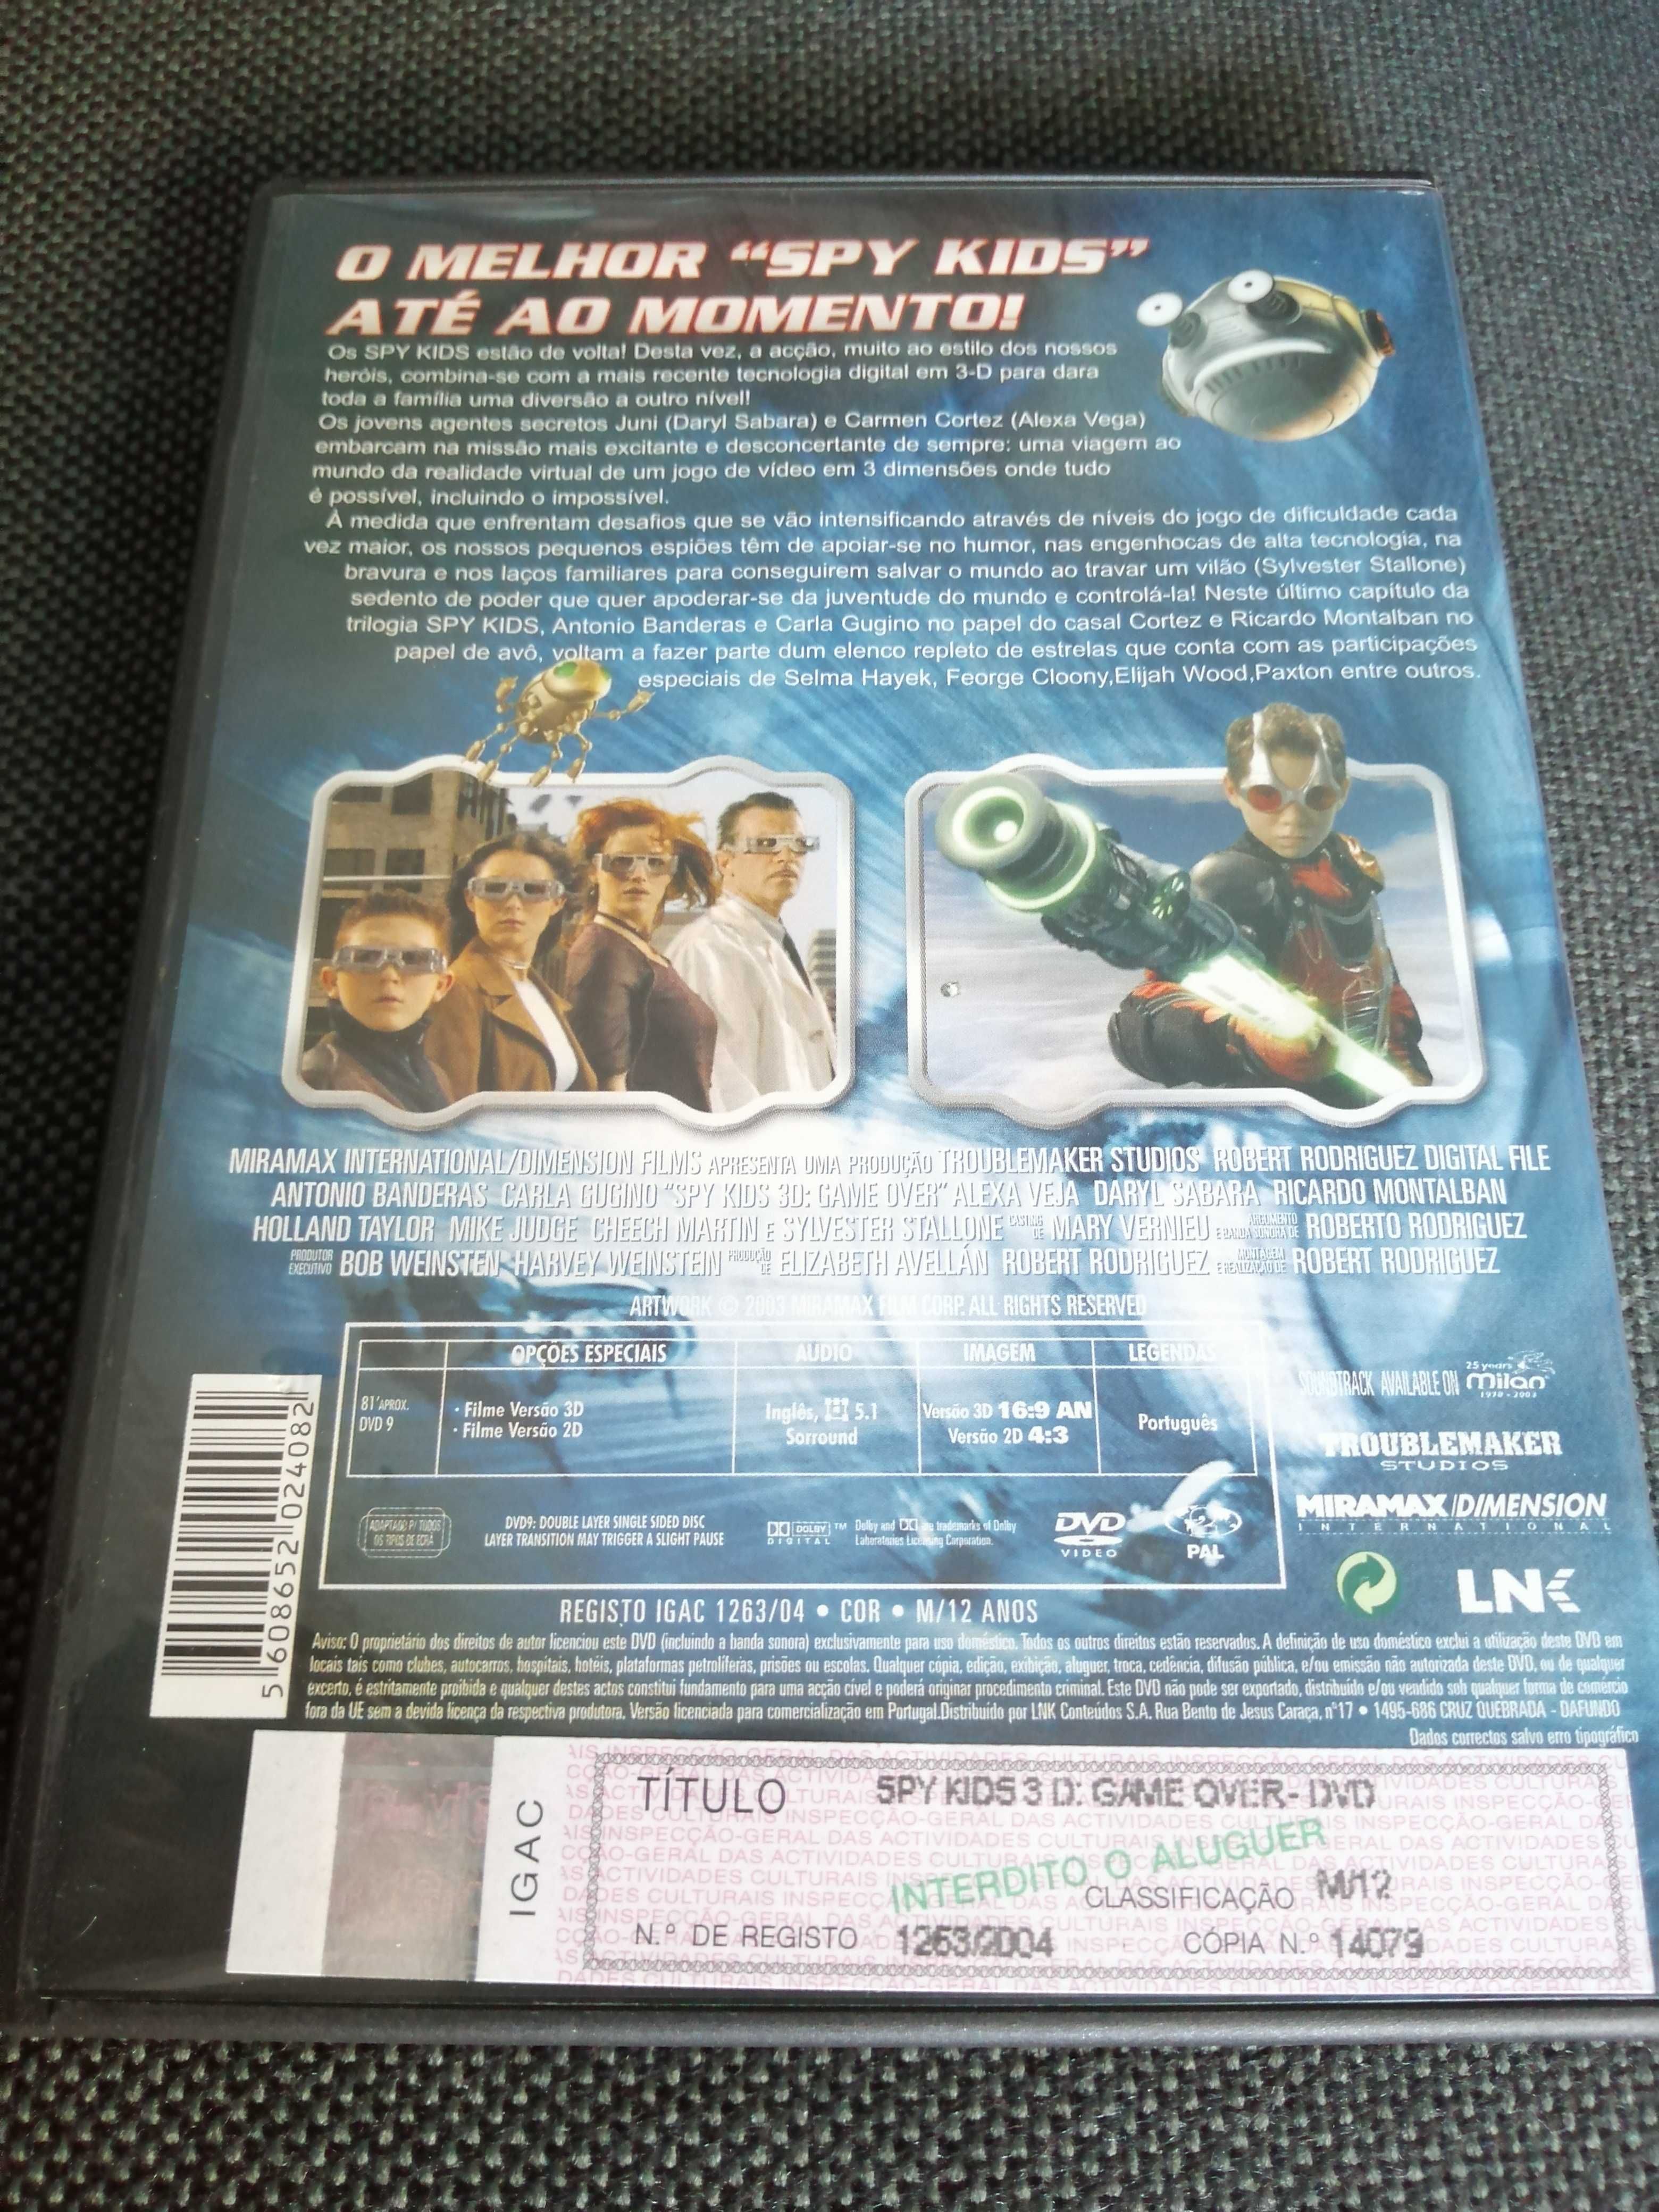 Filme Spy Kids 3D Game Over, com óculos 3D